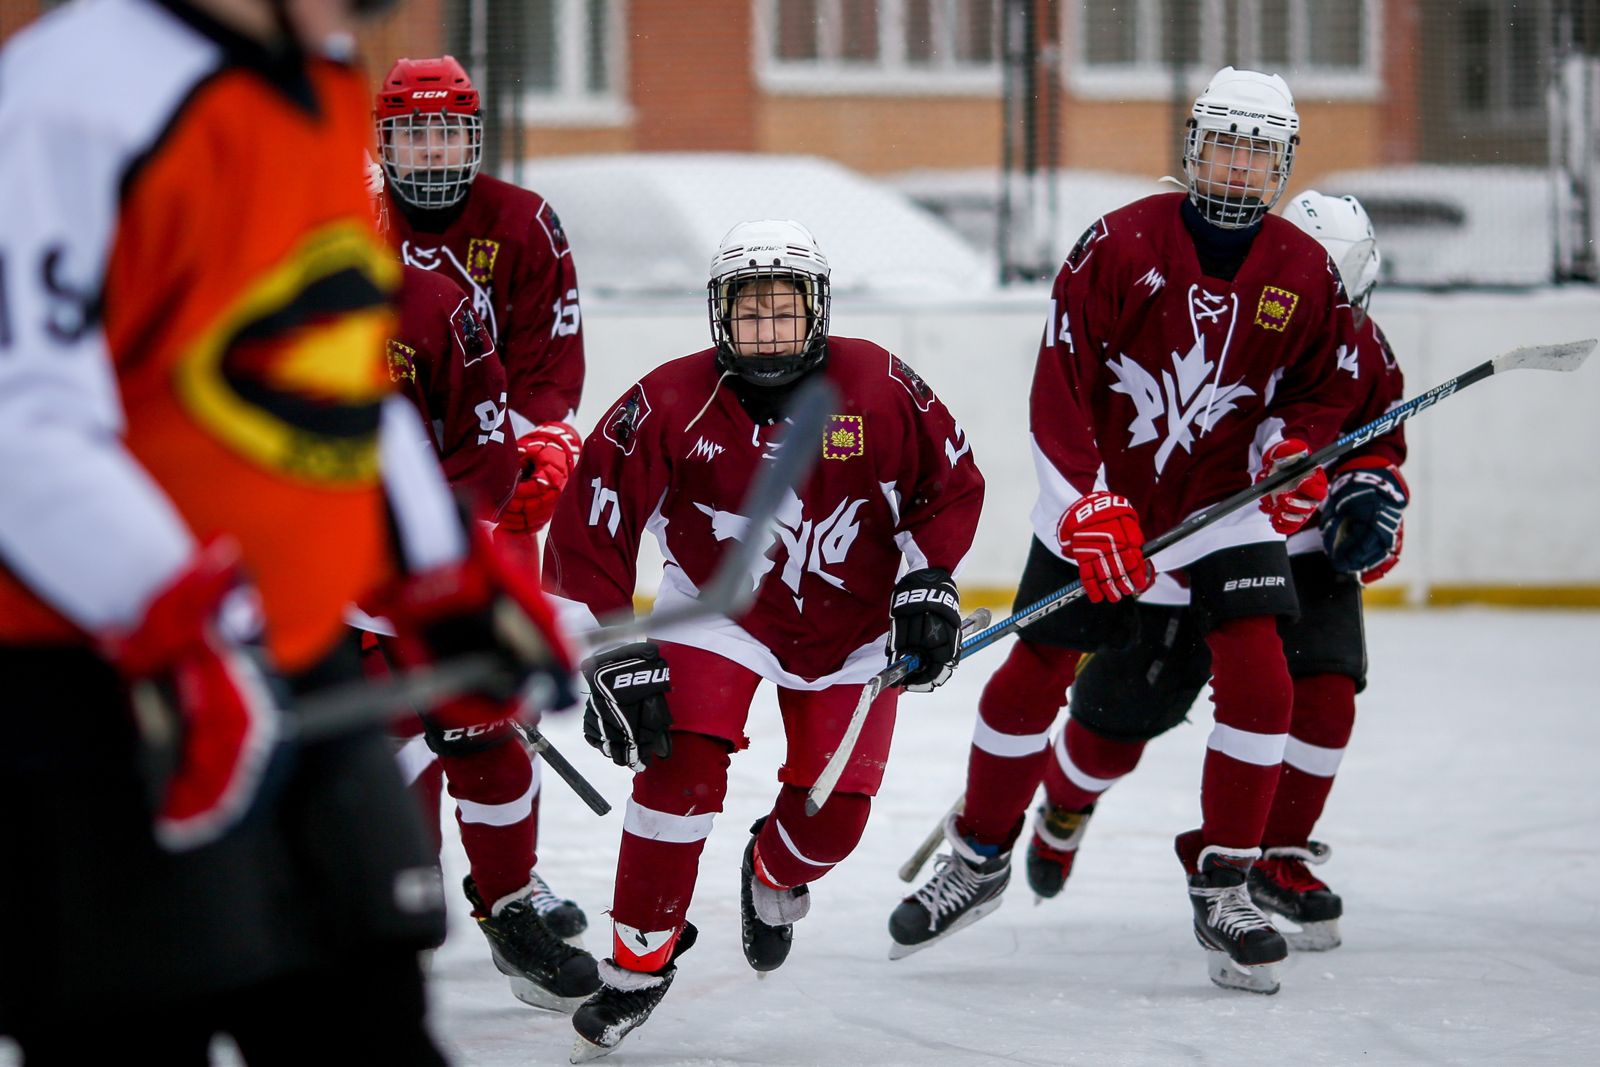 Победу в матче одержали хоккеисты из Кленовского